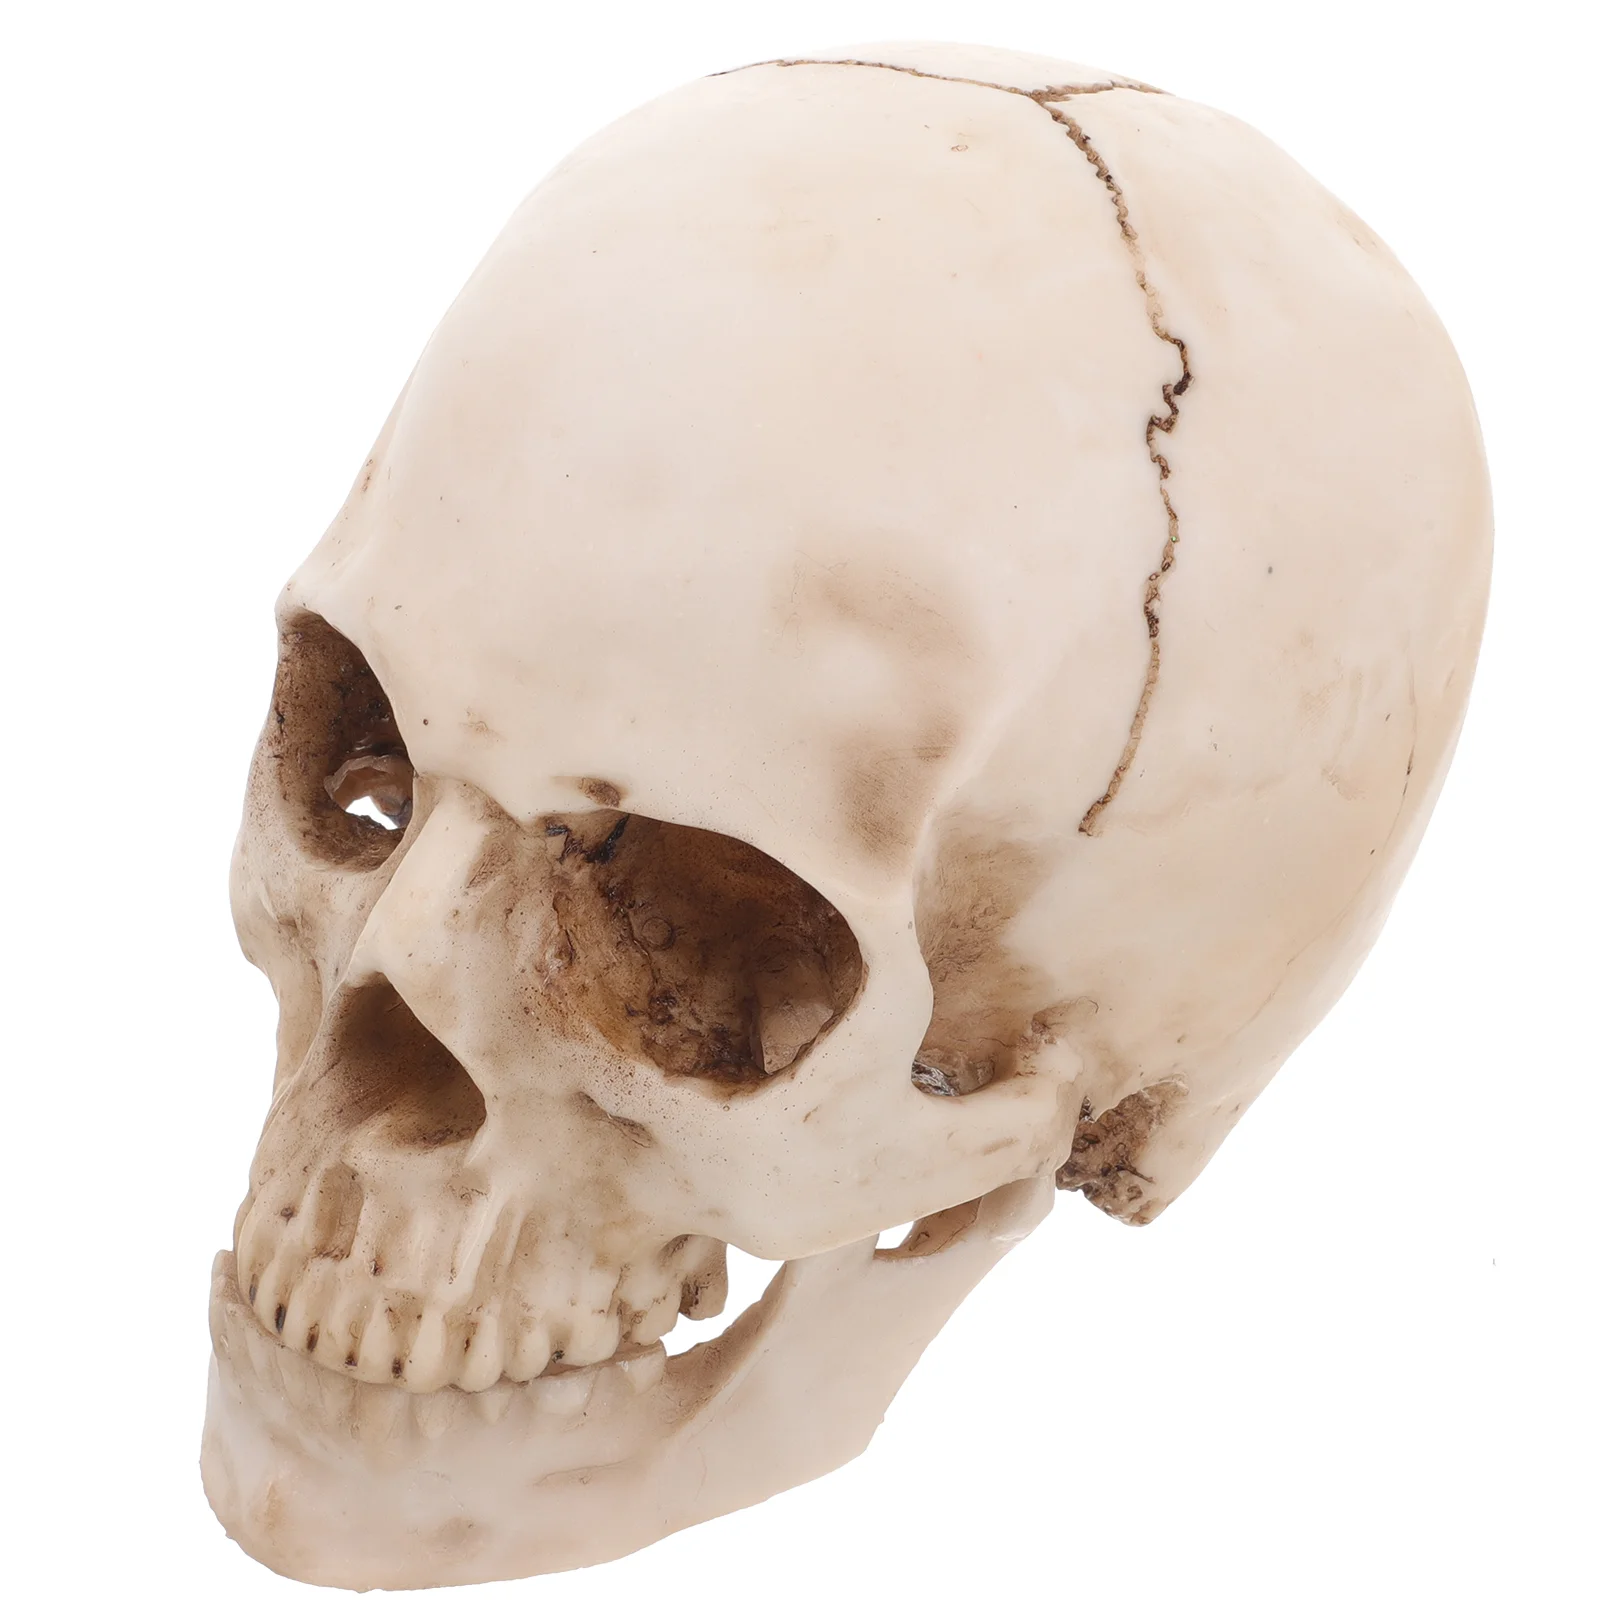 

Имитация смолы в натуральную величину 1:1, модель человека, медицинская анатомическая статуя для обучения, украшение на Хэллоуин